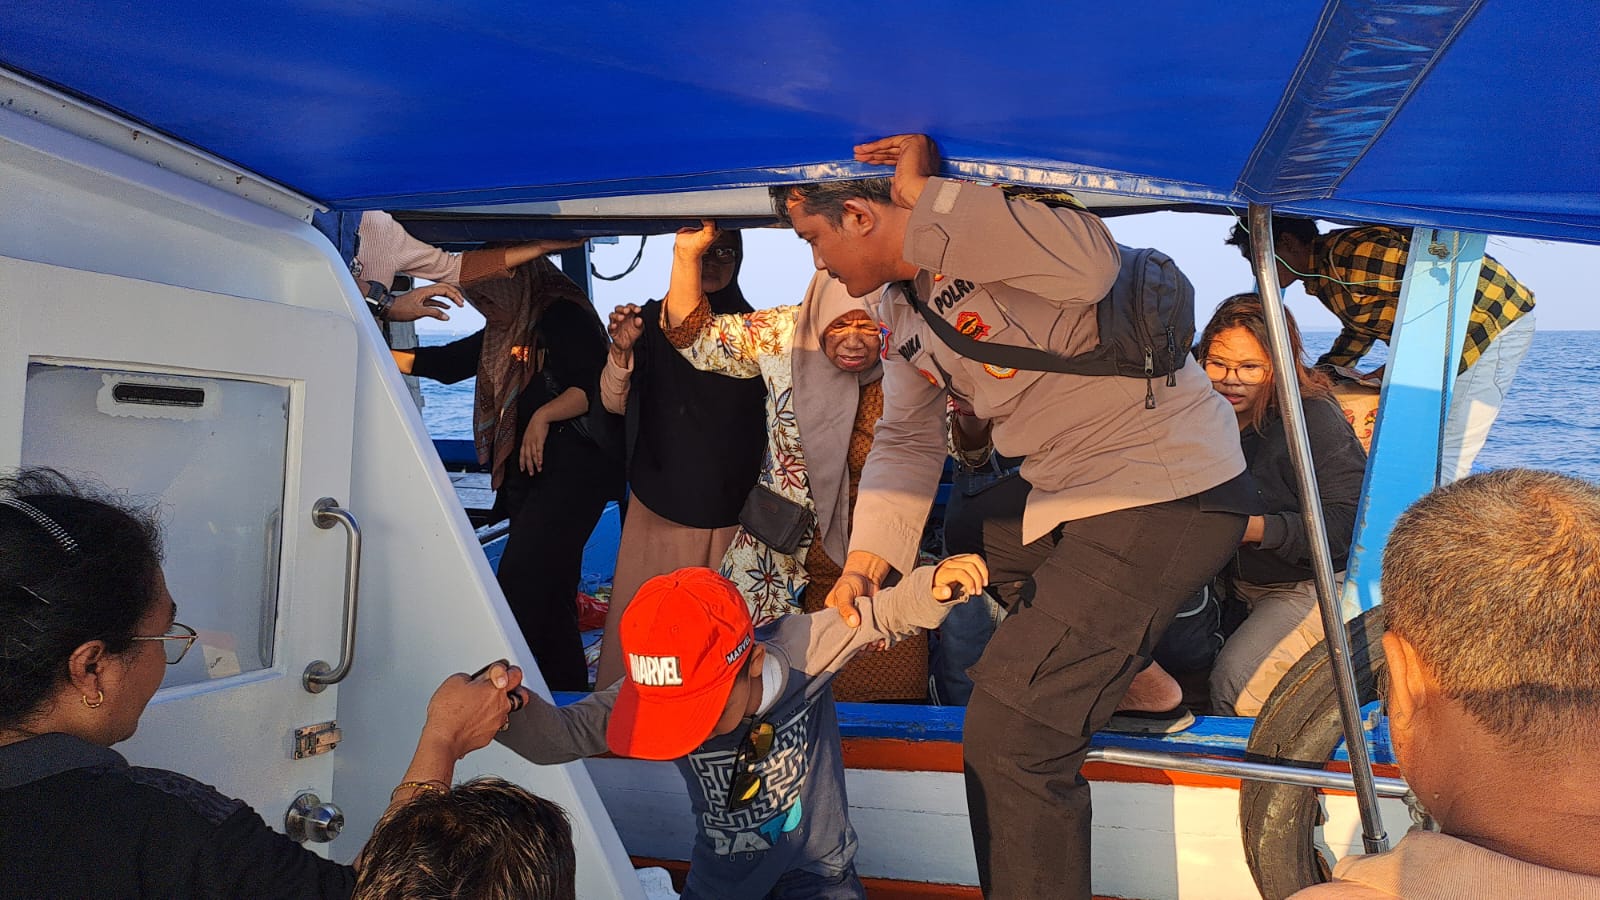 Evakuasi Kapal KM AS Pesona Samudra oleh Polsek Kepulauan Seribu Selatan dalam Rangka Kegiatan Hajatan Betawi di Pulau Tidung